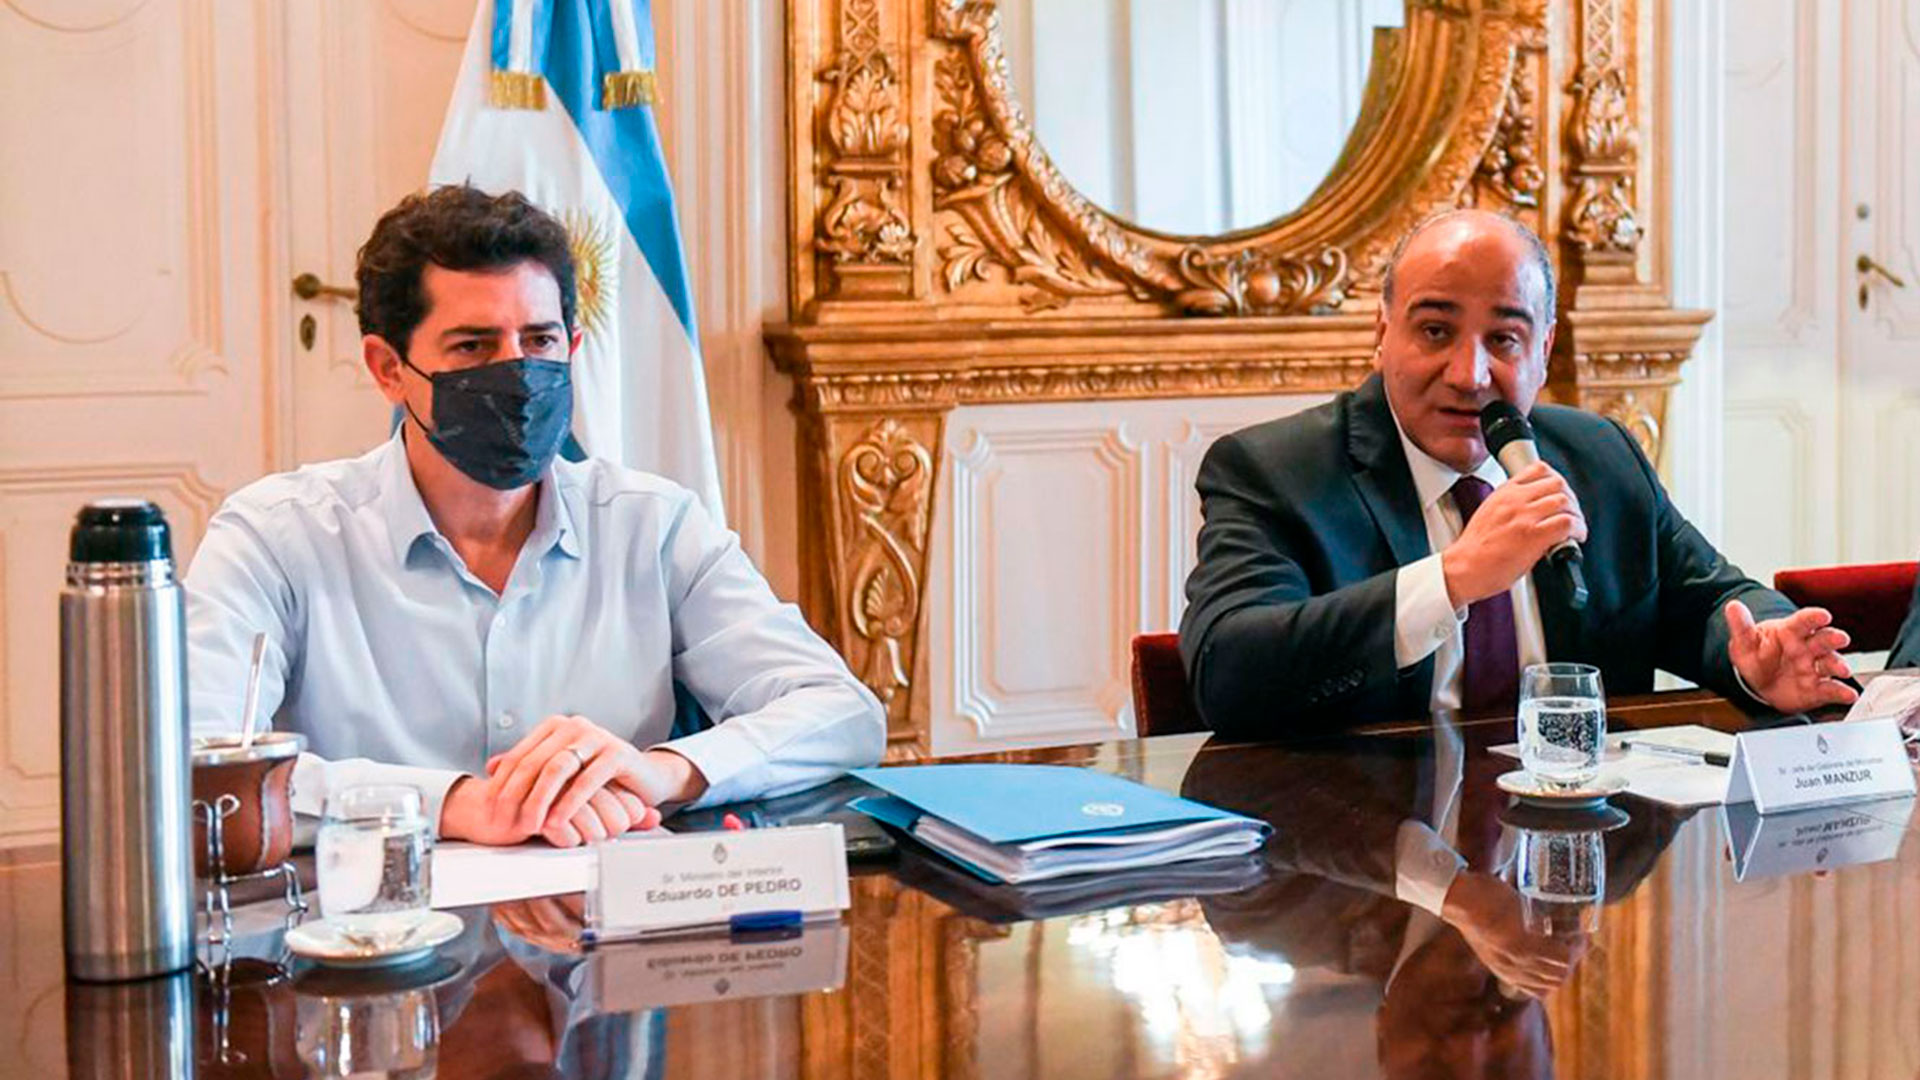 El ministro del Interior, Eduardo "Wado" De Pedro, y el jefe de Gabinete, Juan Manzur, serán dos de los dirigentes que asistirán al acto en Mendoza 